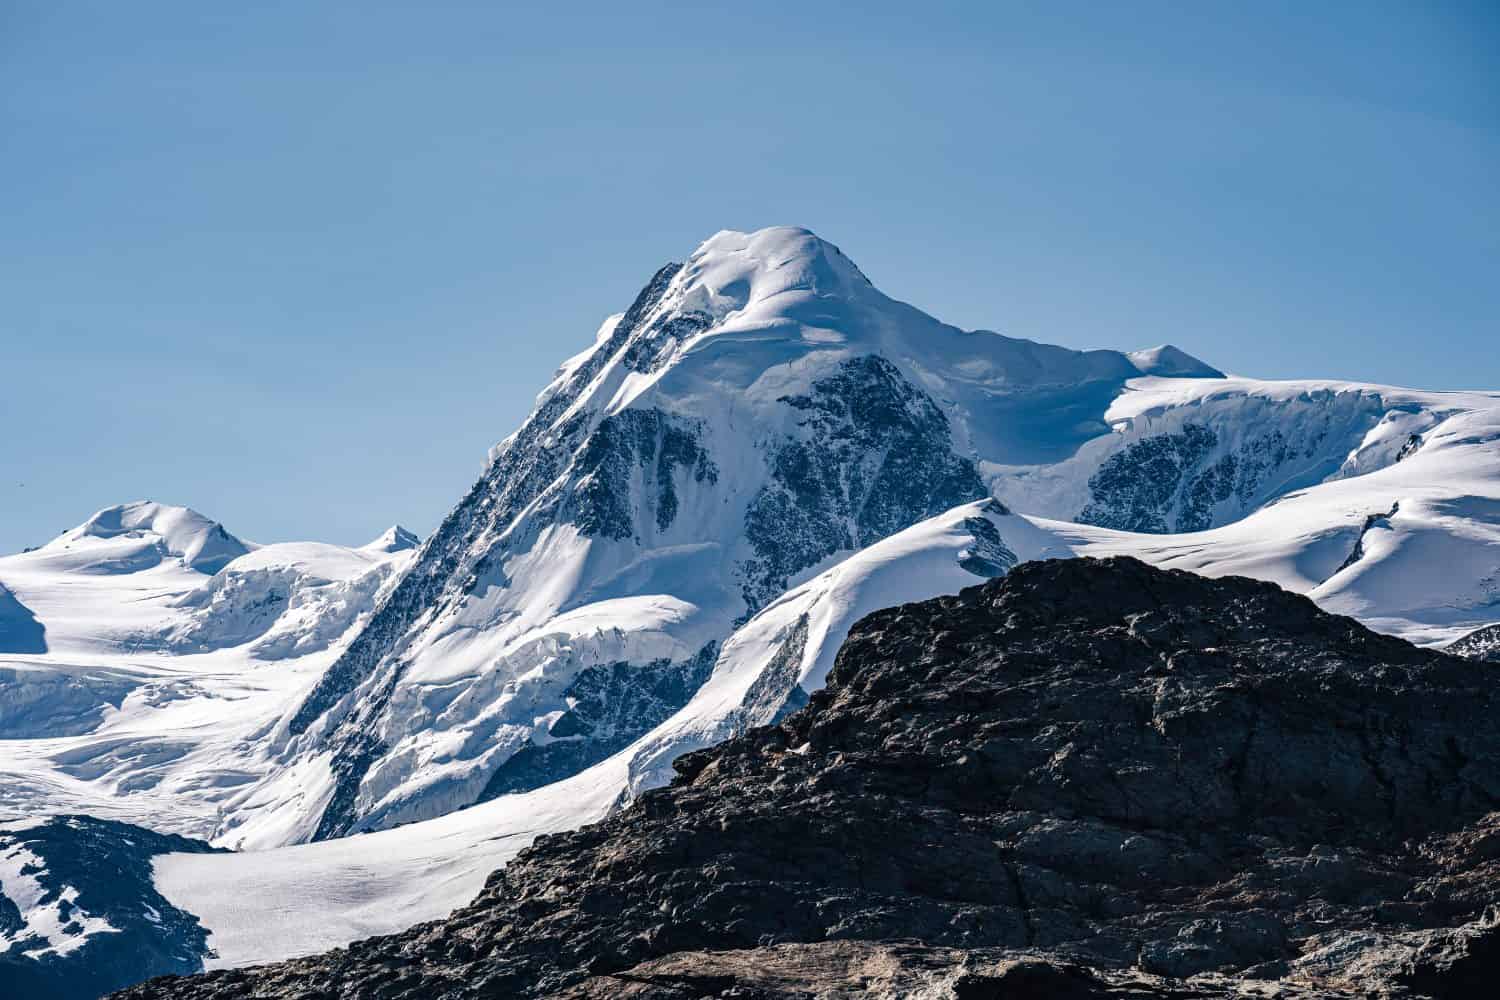 Il vertice di Liskamm, famosa vetta alpina sopra Zermatt, Svizzera.  Paesaggio alpino di montagna del Vallese.  Vetta coperta di neve e ghiaccio, ghiacciaio del Monte Rosa.